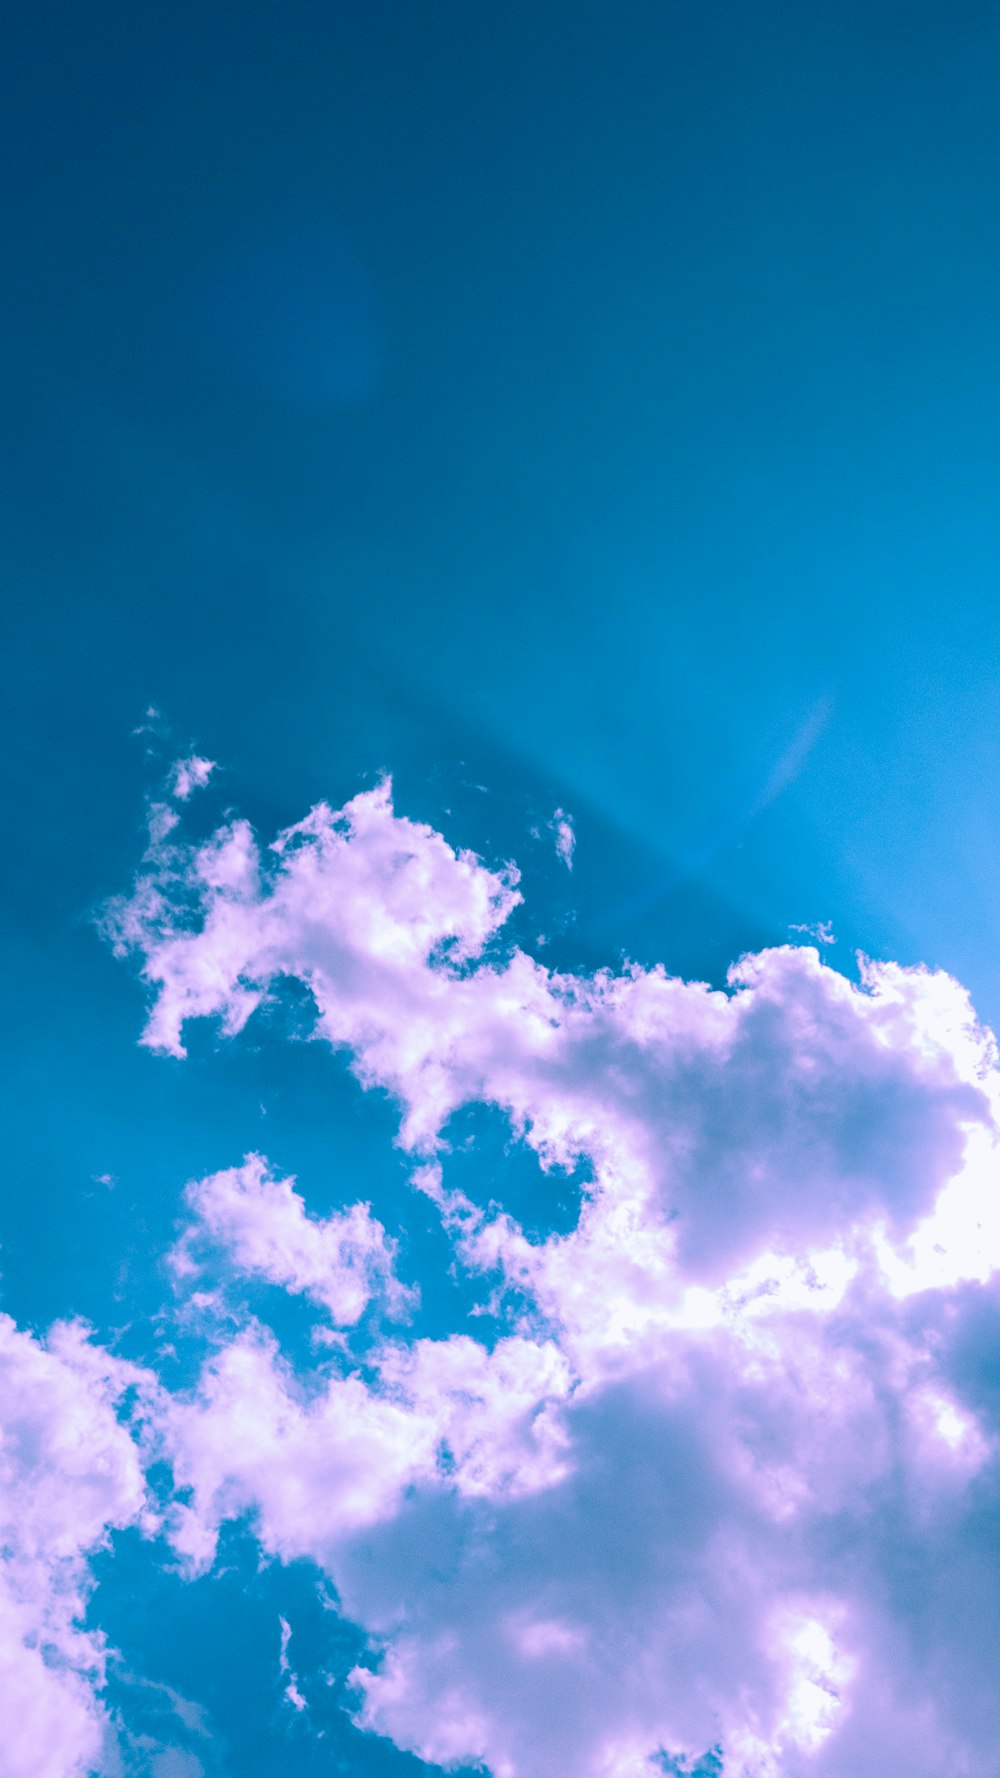 雲のある青い空を飛ぶ飛行機